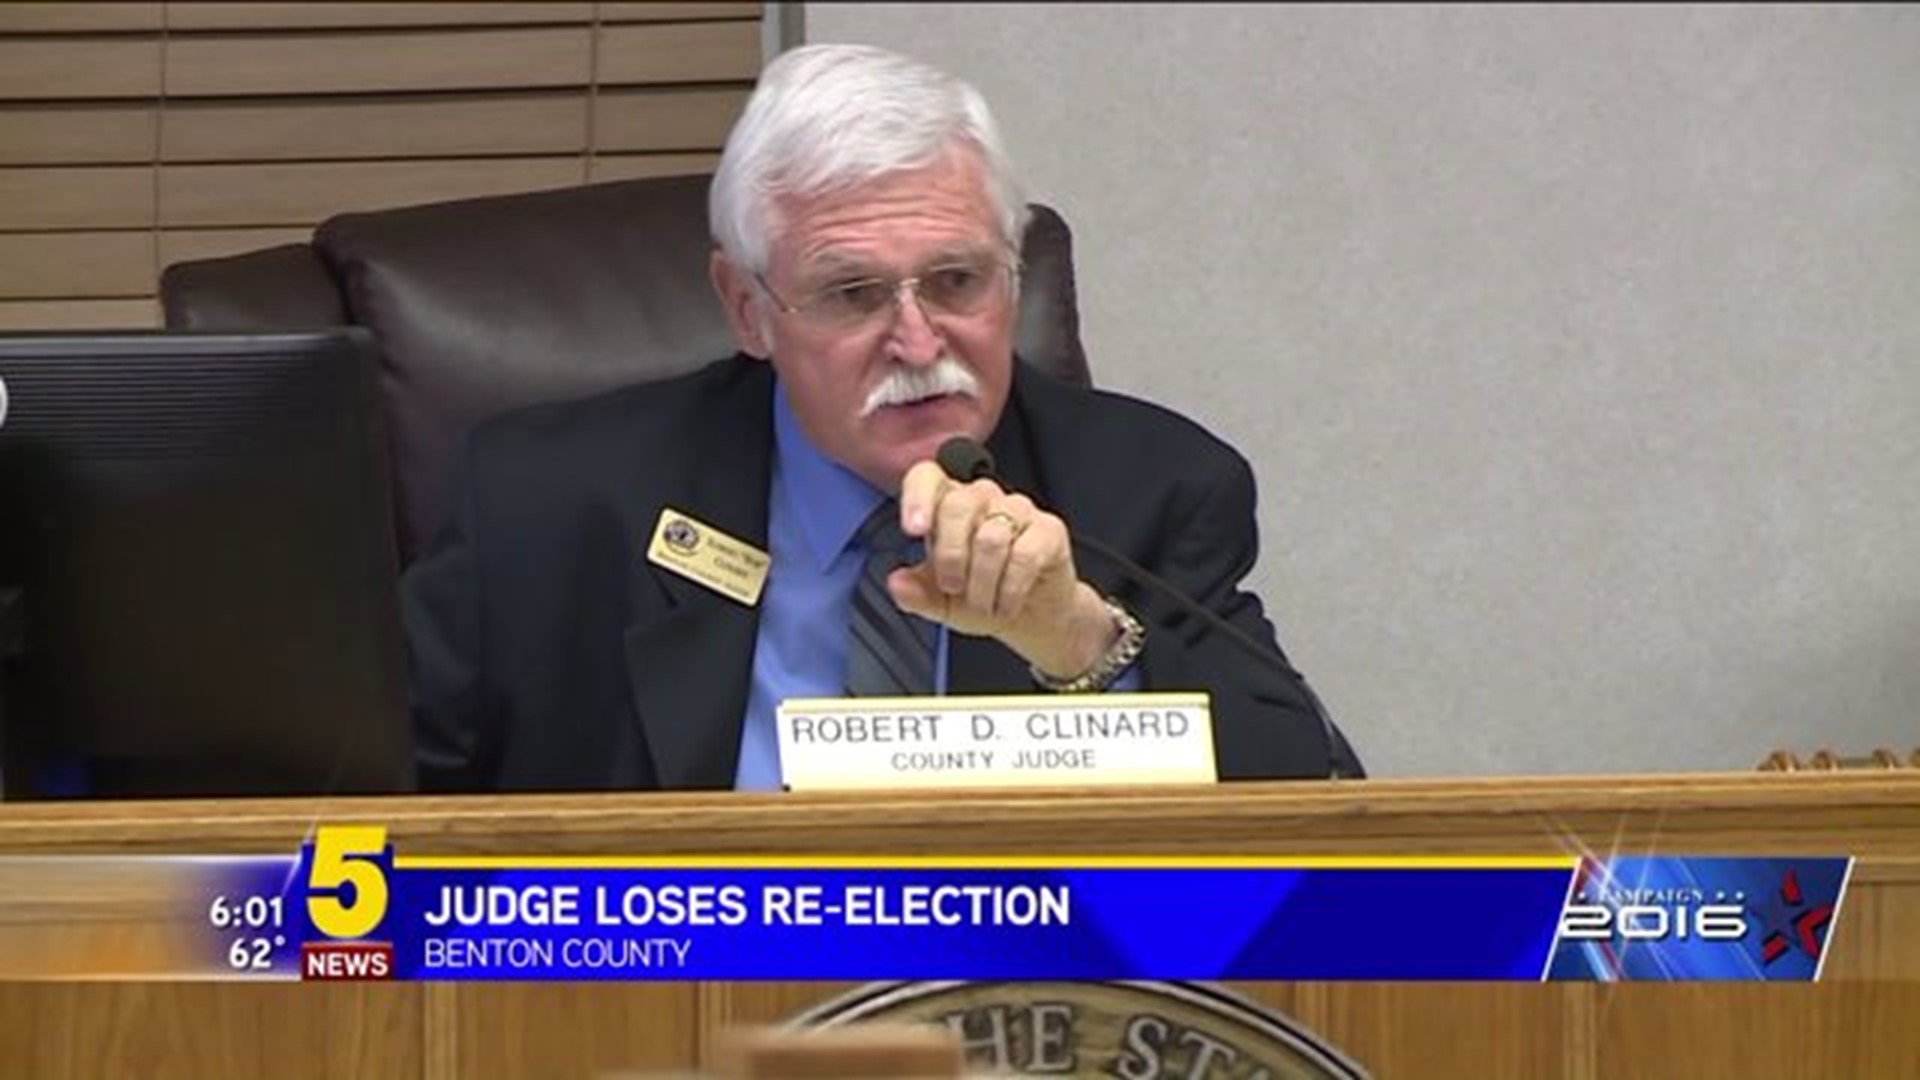 BENTON COUNTY JUDGE LOSES RE-ELECTION